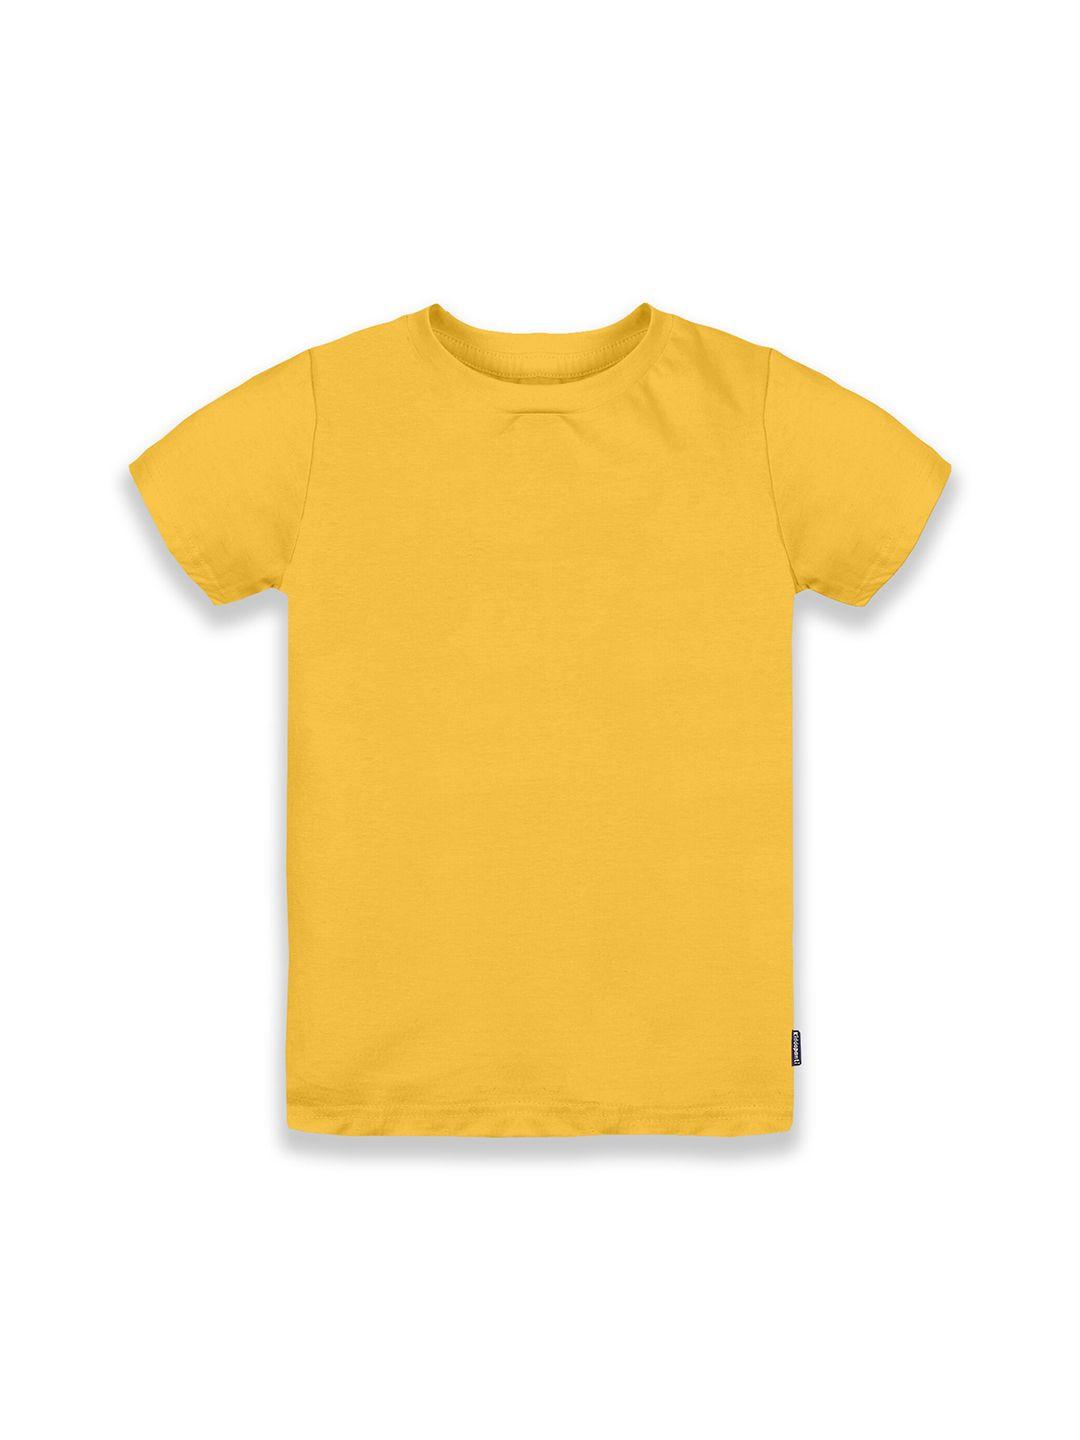 kiddopanti boy solid mustard yellow pure cotton t-shirt